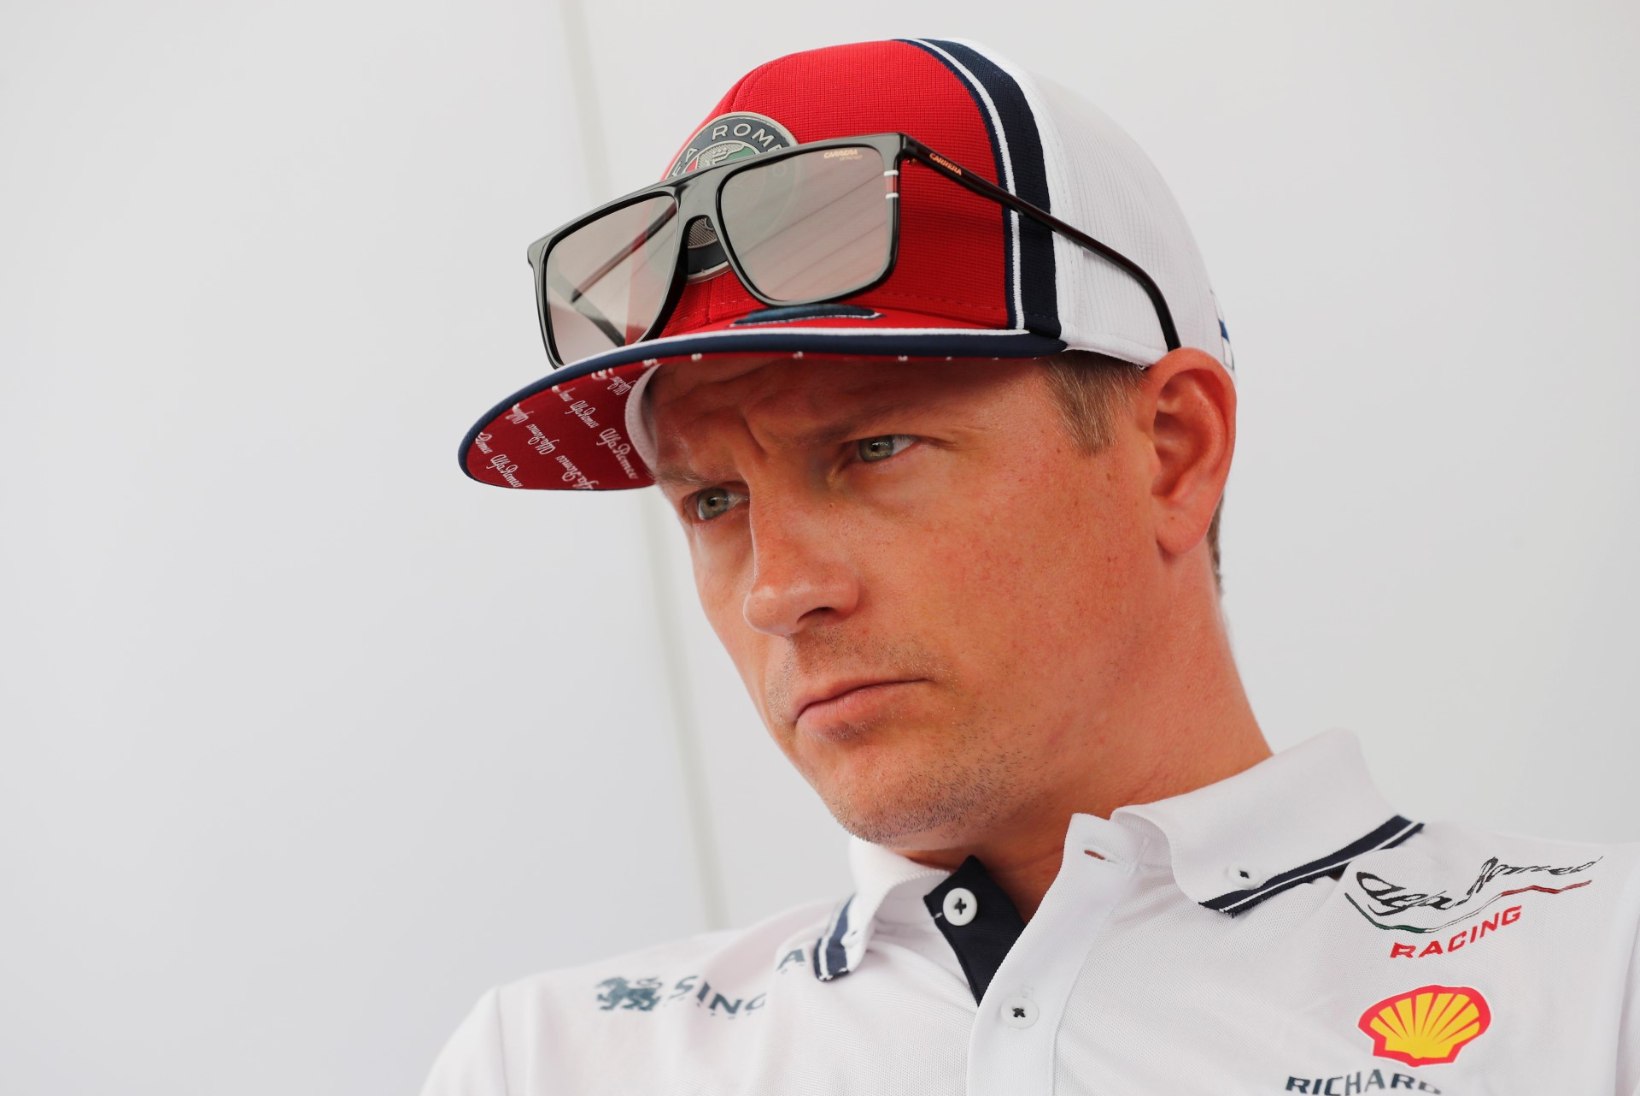 TOHOH! Räikkönenist võib saada Tänaku konkurent… või tiimikaaslane?